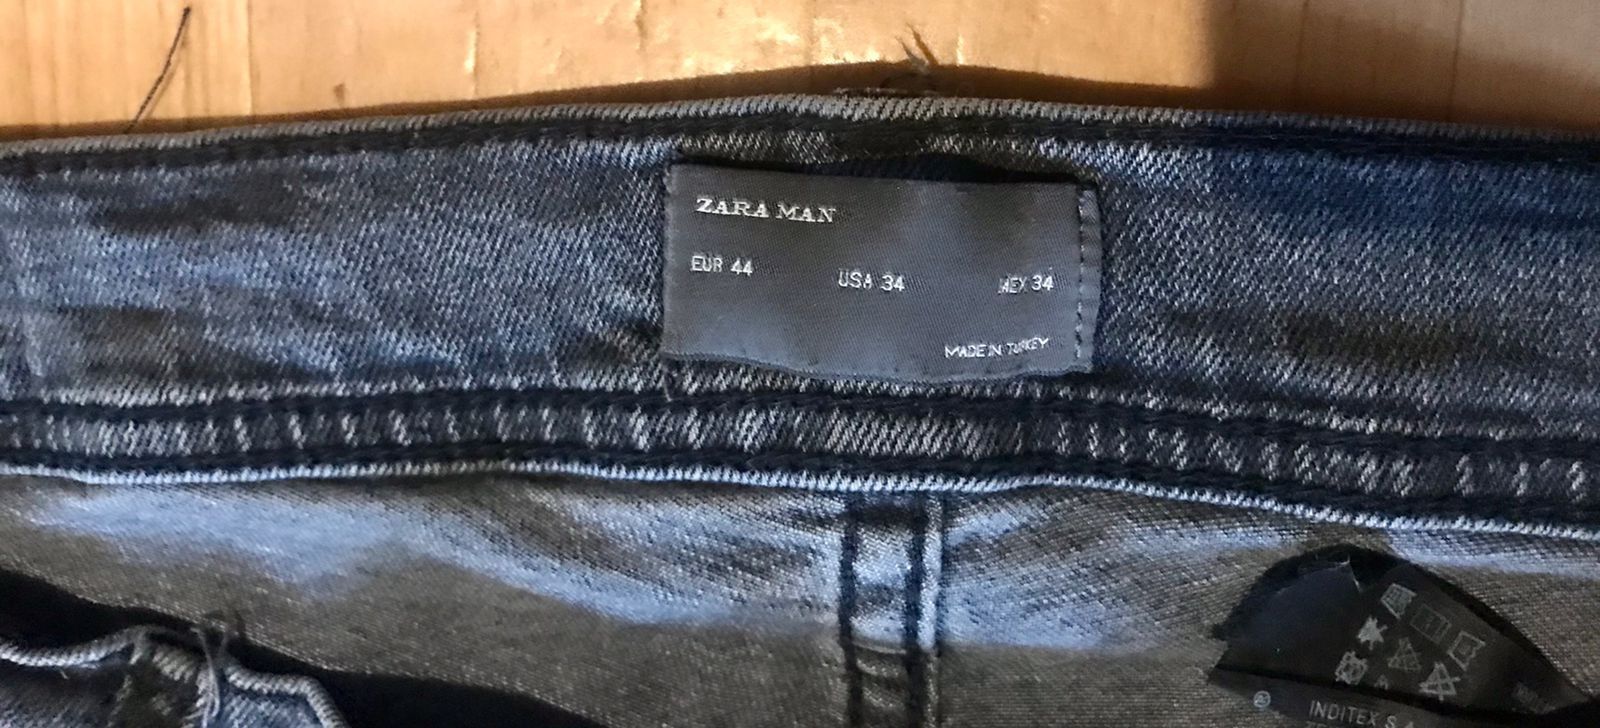 Мужские джинсы фирма Zara